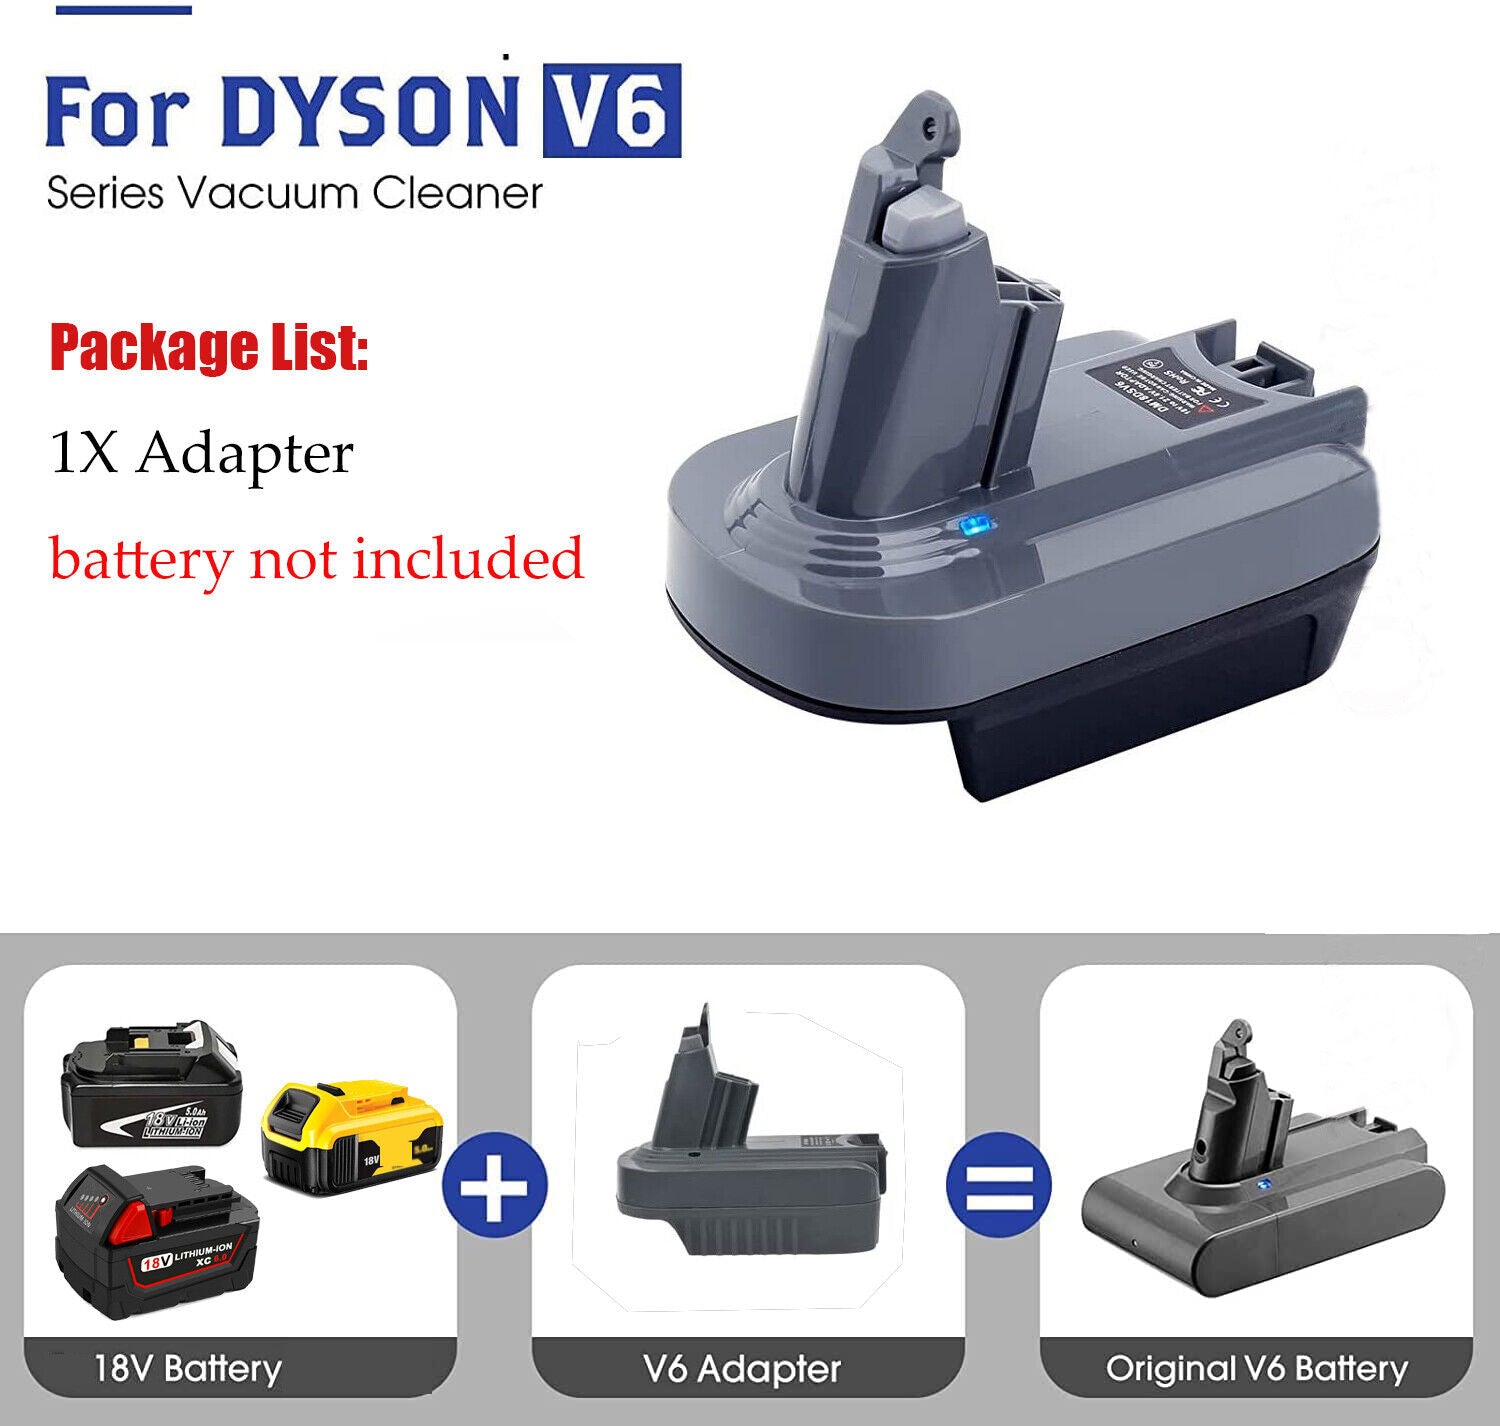 Bosch (Blue) 18V to Dyson V7 Battery Adapter